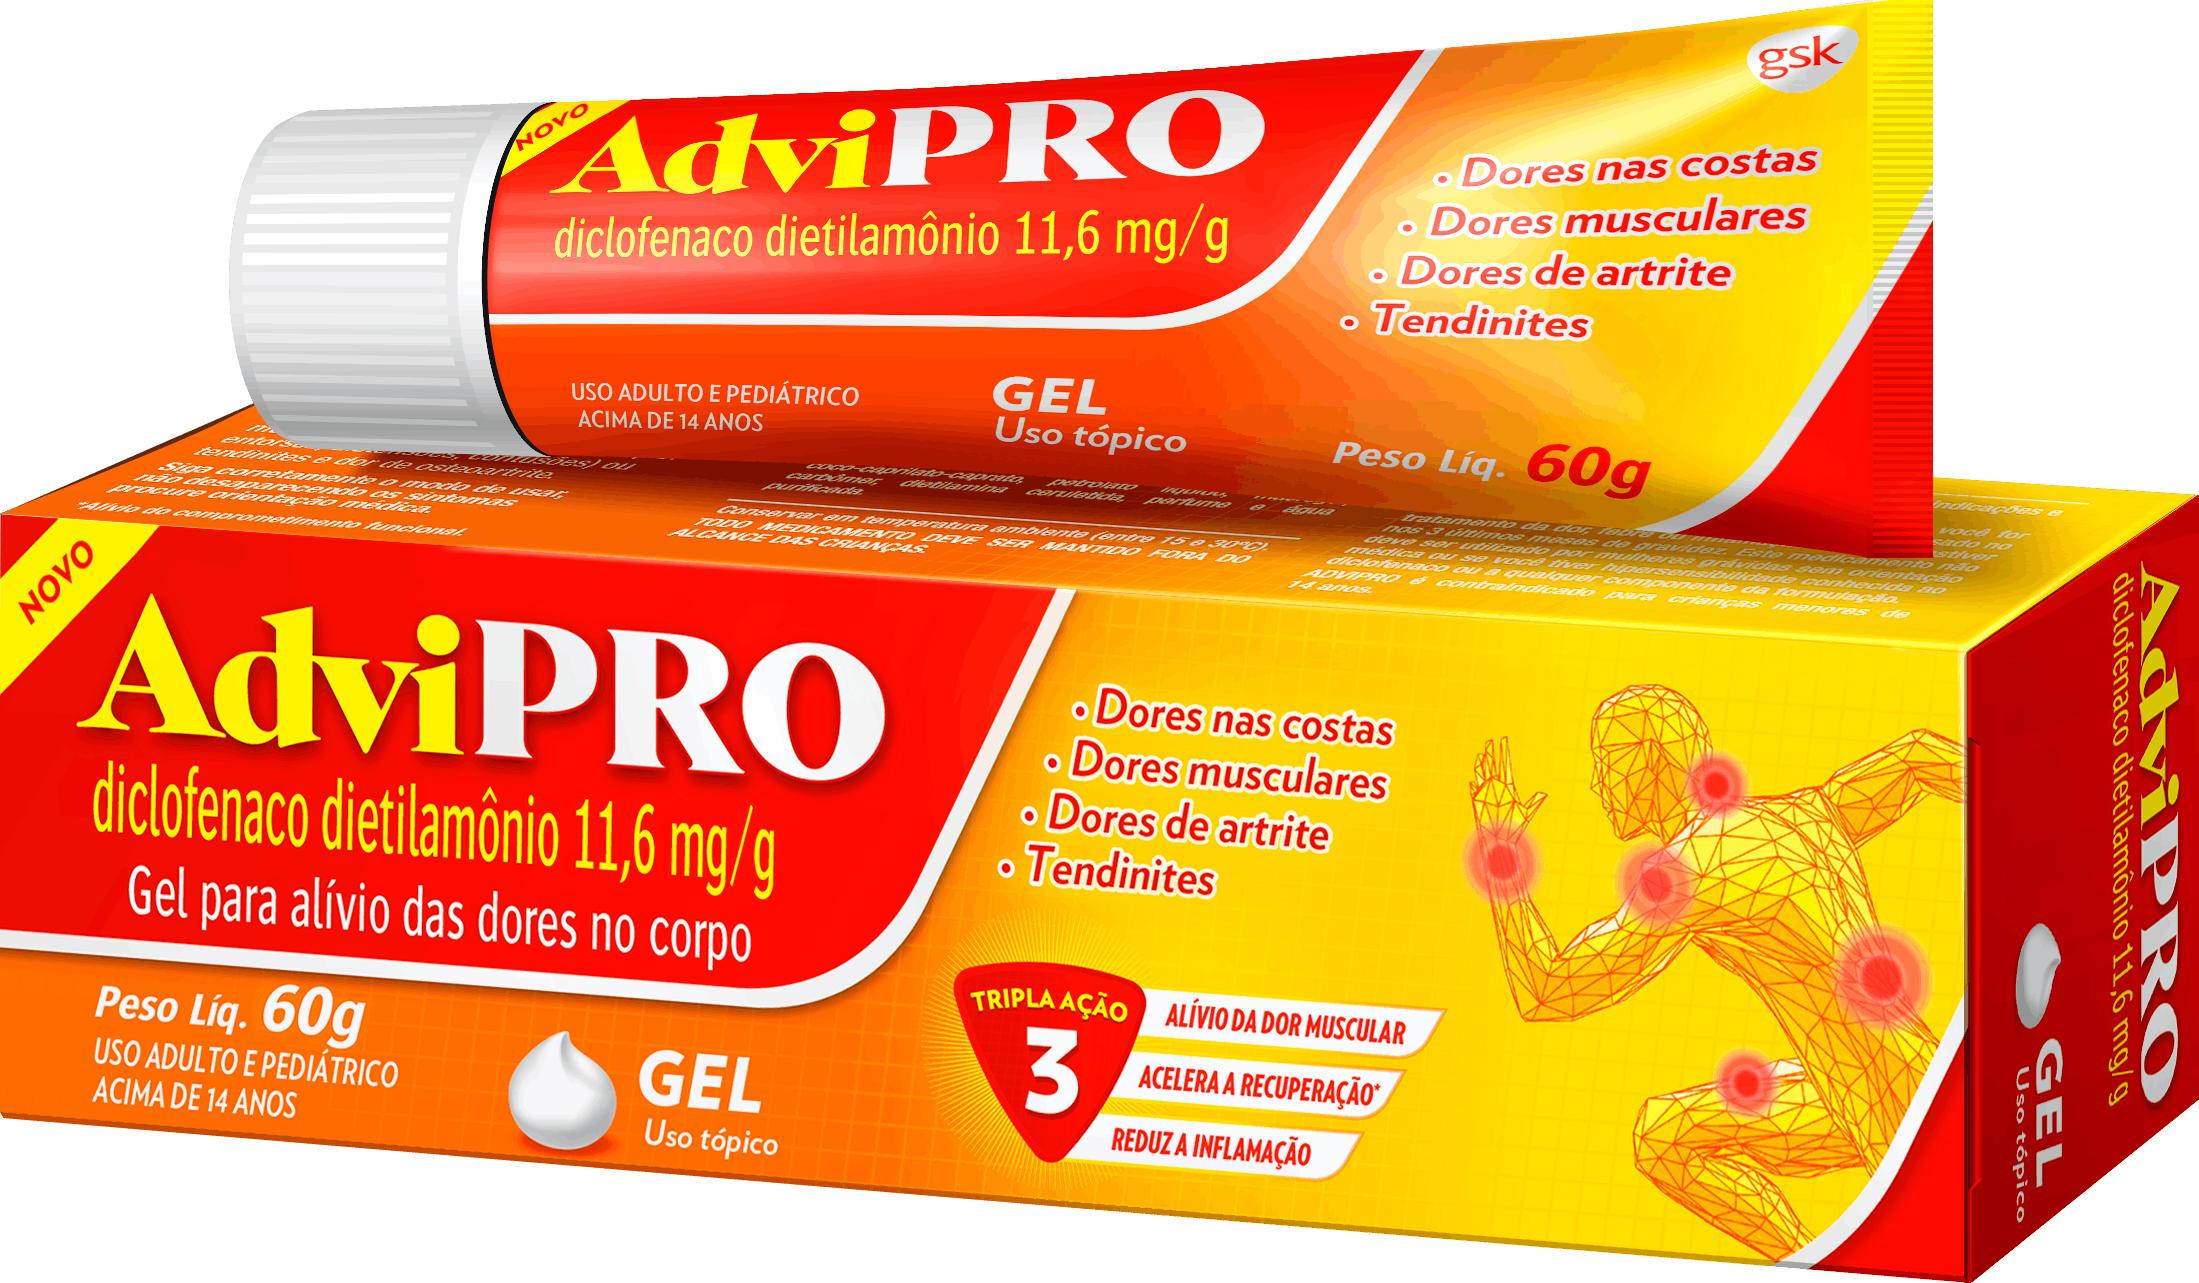 Advil pro